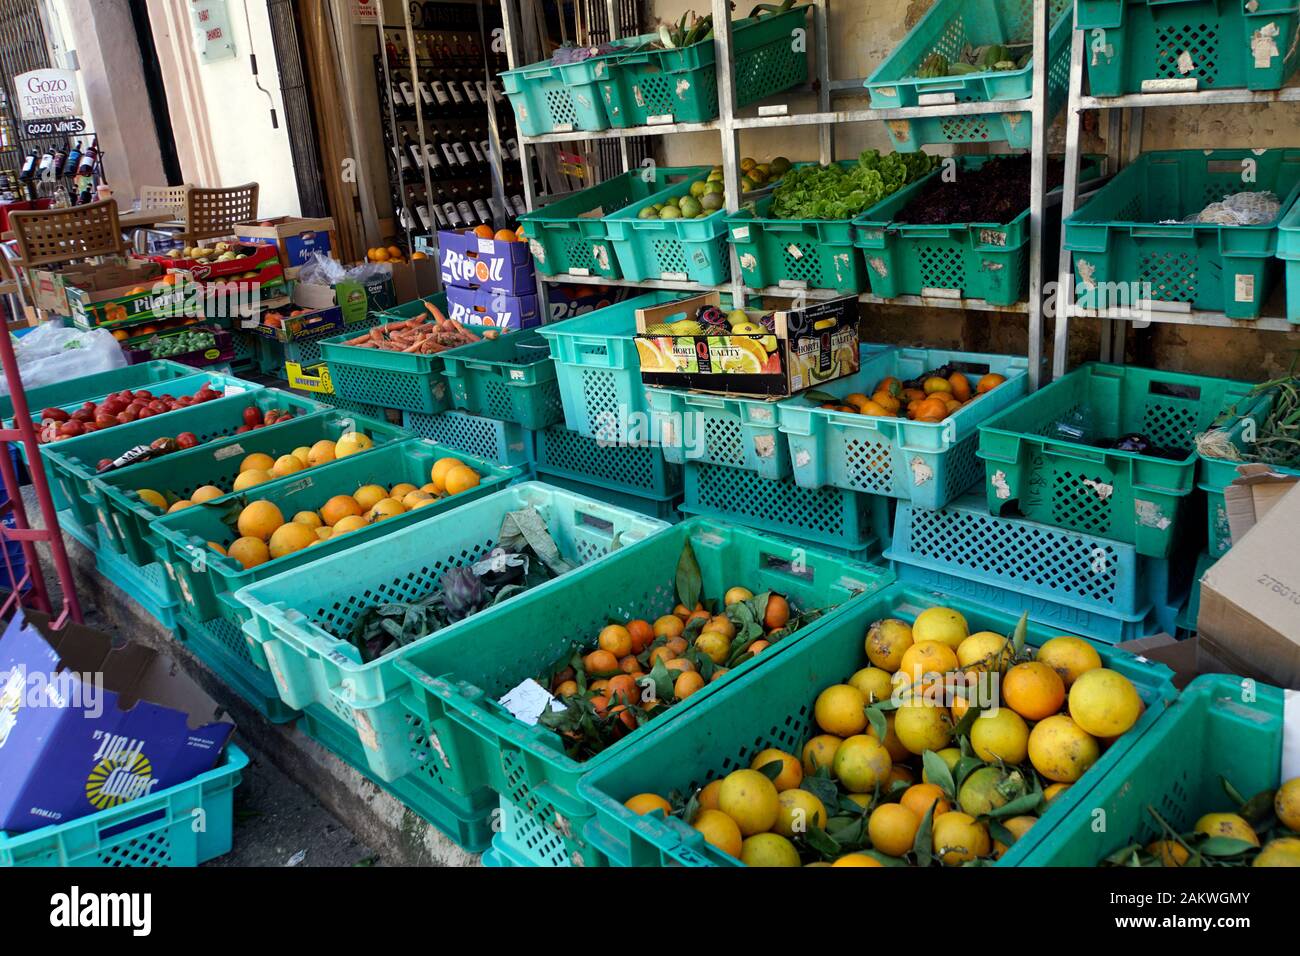 Marktstand mit Obst und Gemüse aus heimischer Landwirtschaft, Victoria, maltesisch Ir-Rabat Ghawdex, Gozo, Malta Stock Photo